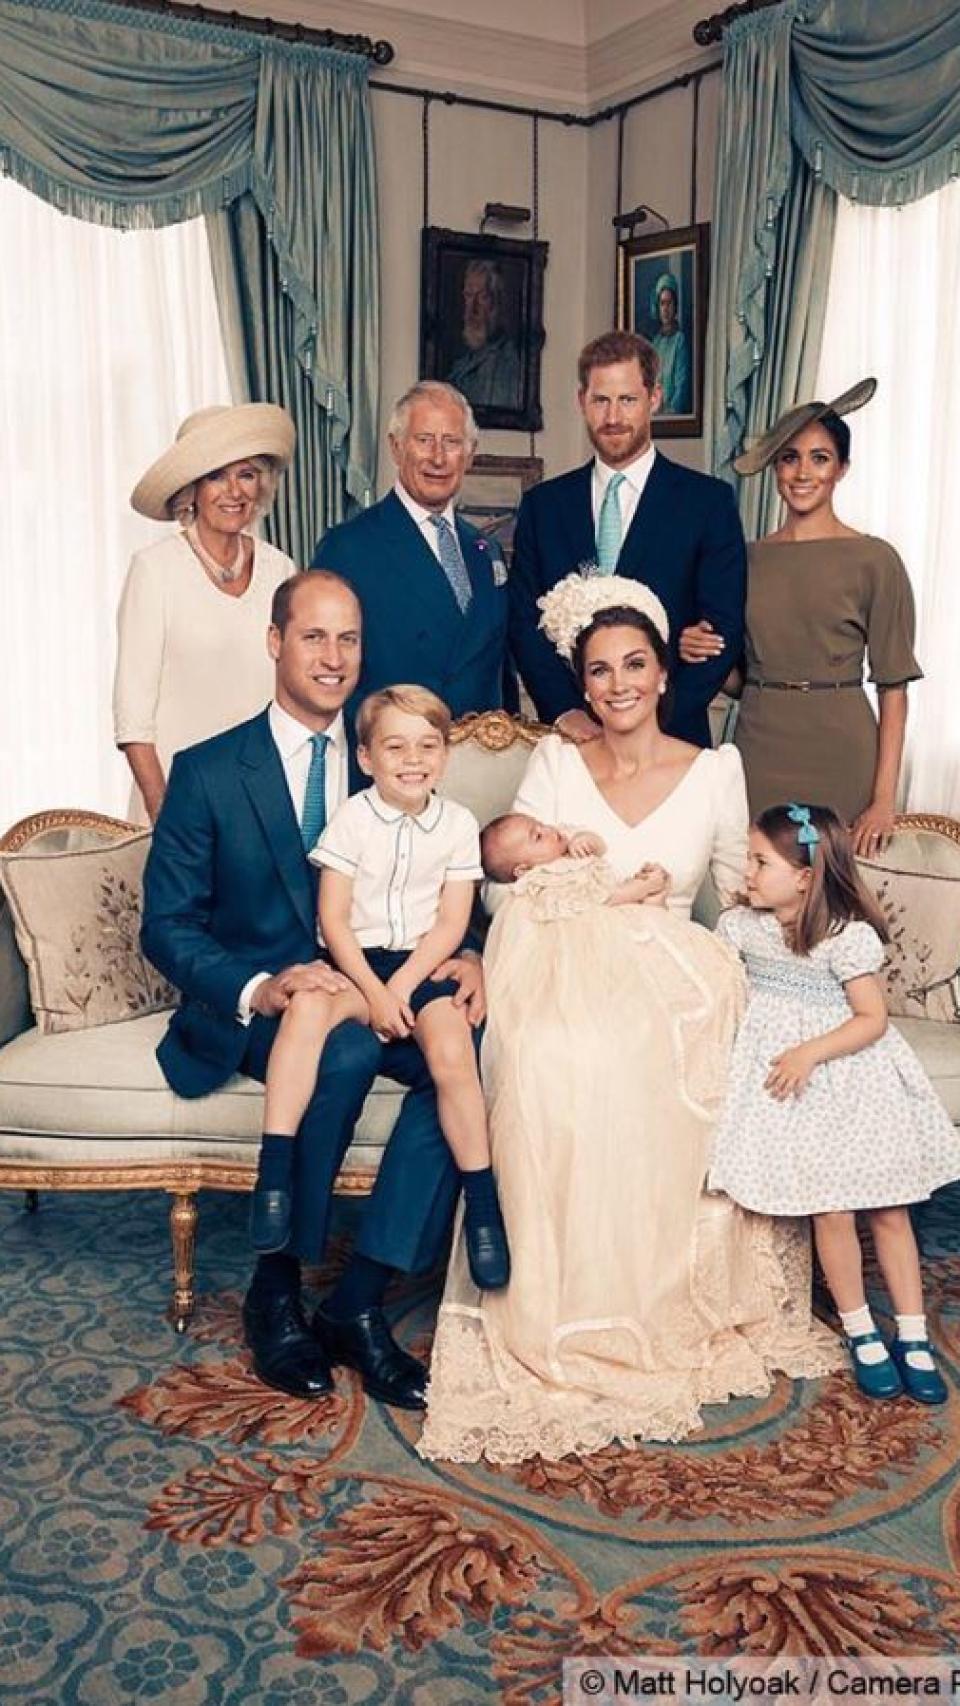 Otra imagen oficial de la familia real compartidas en redes sociales.